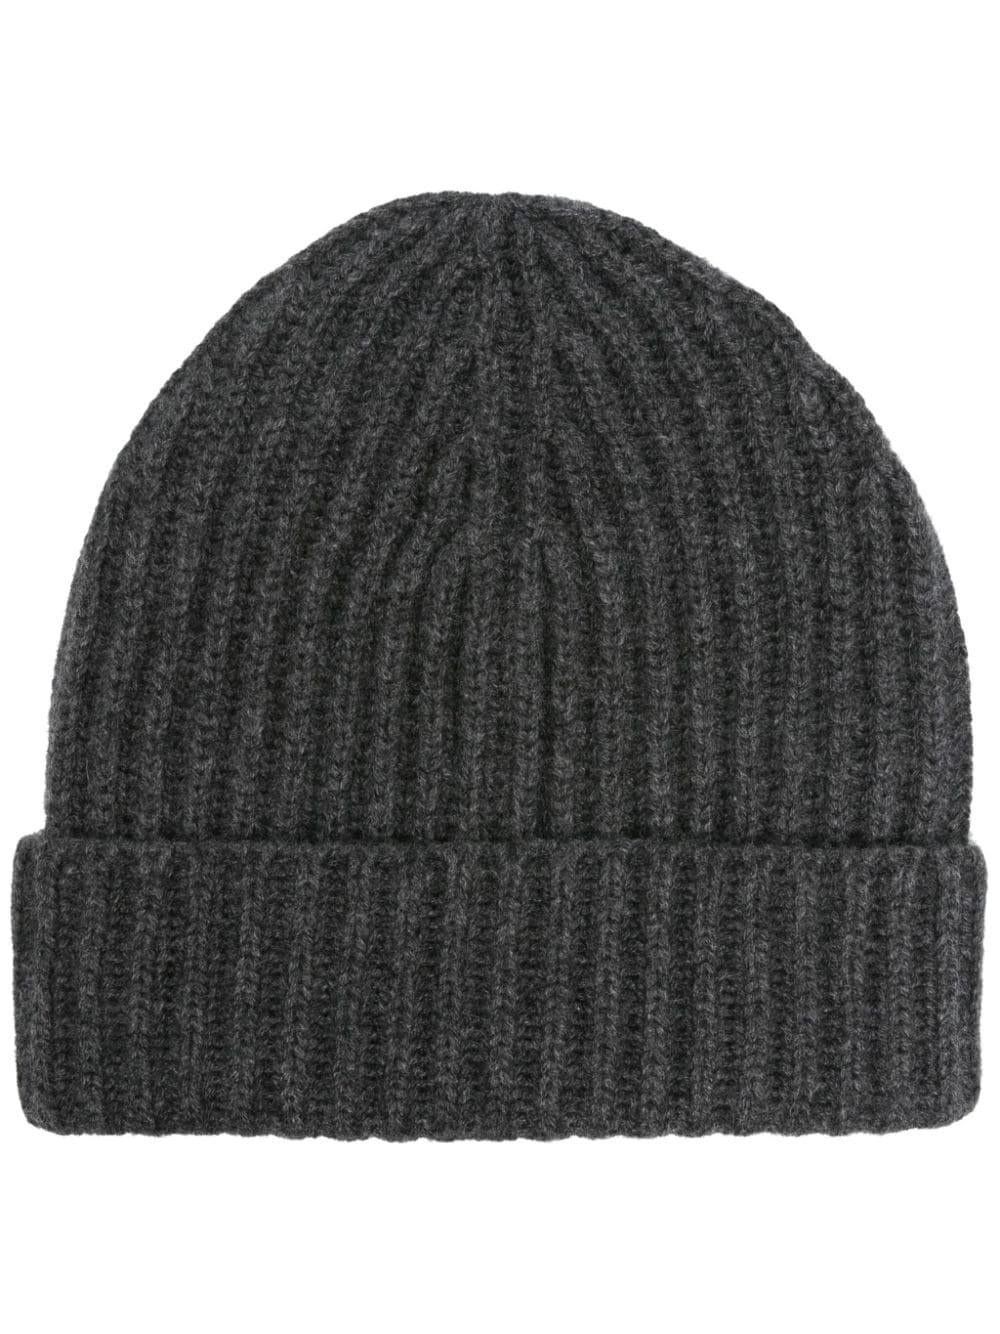 dark gray beanie hat